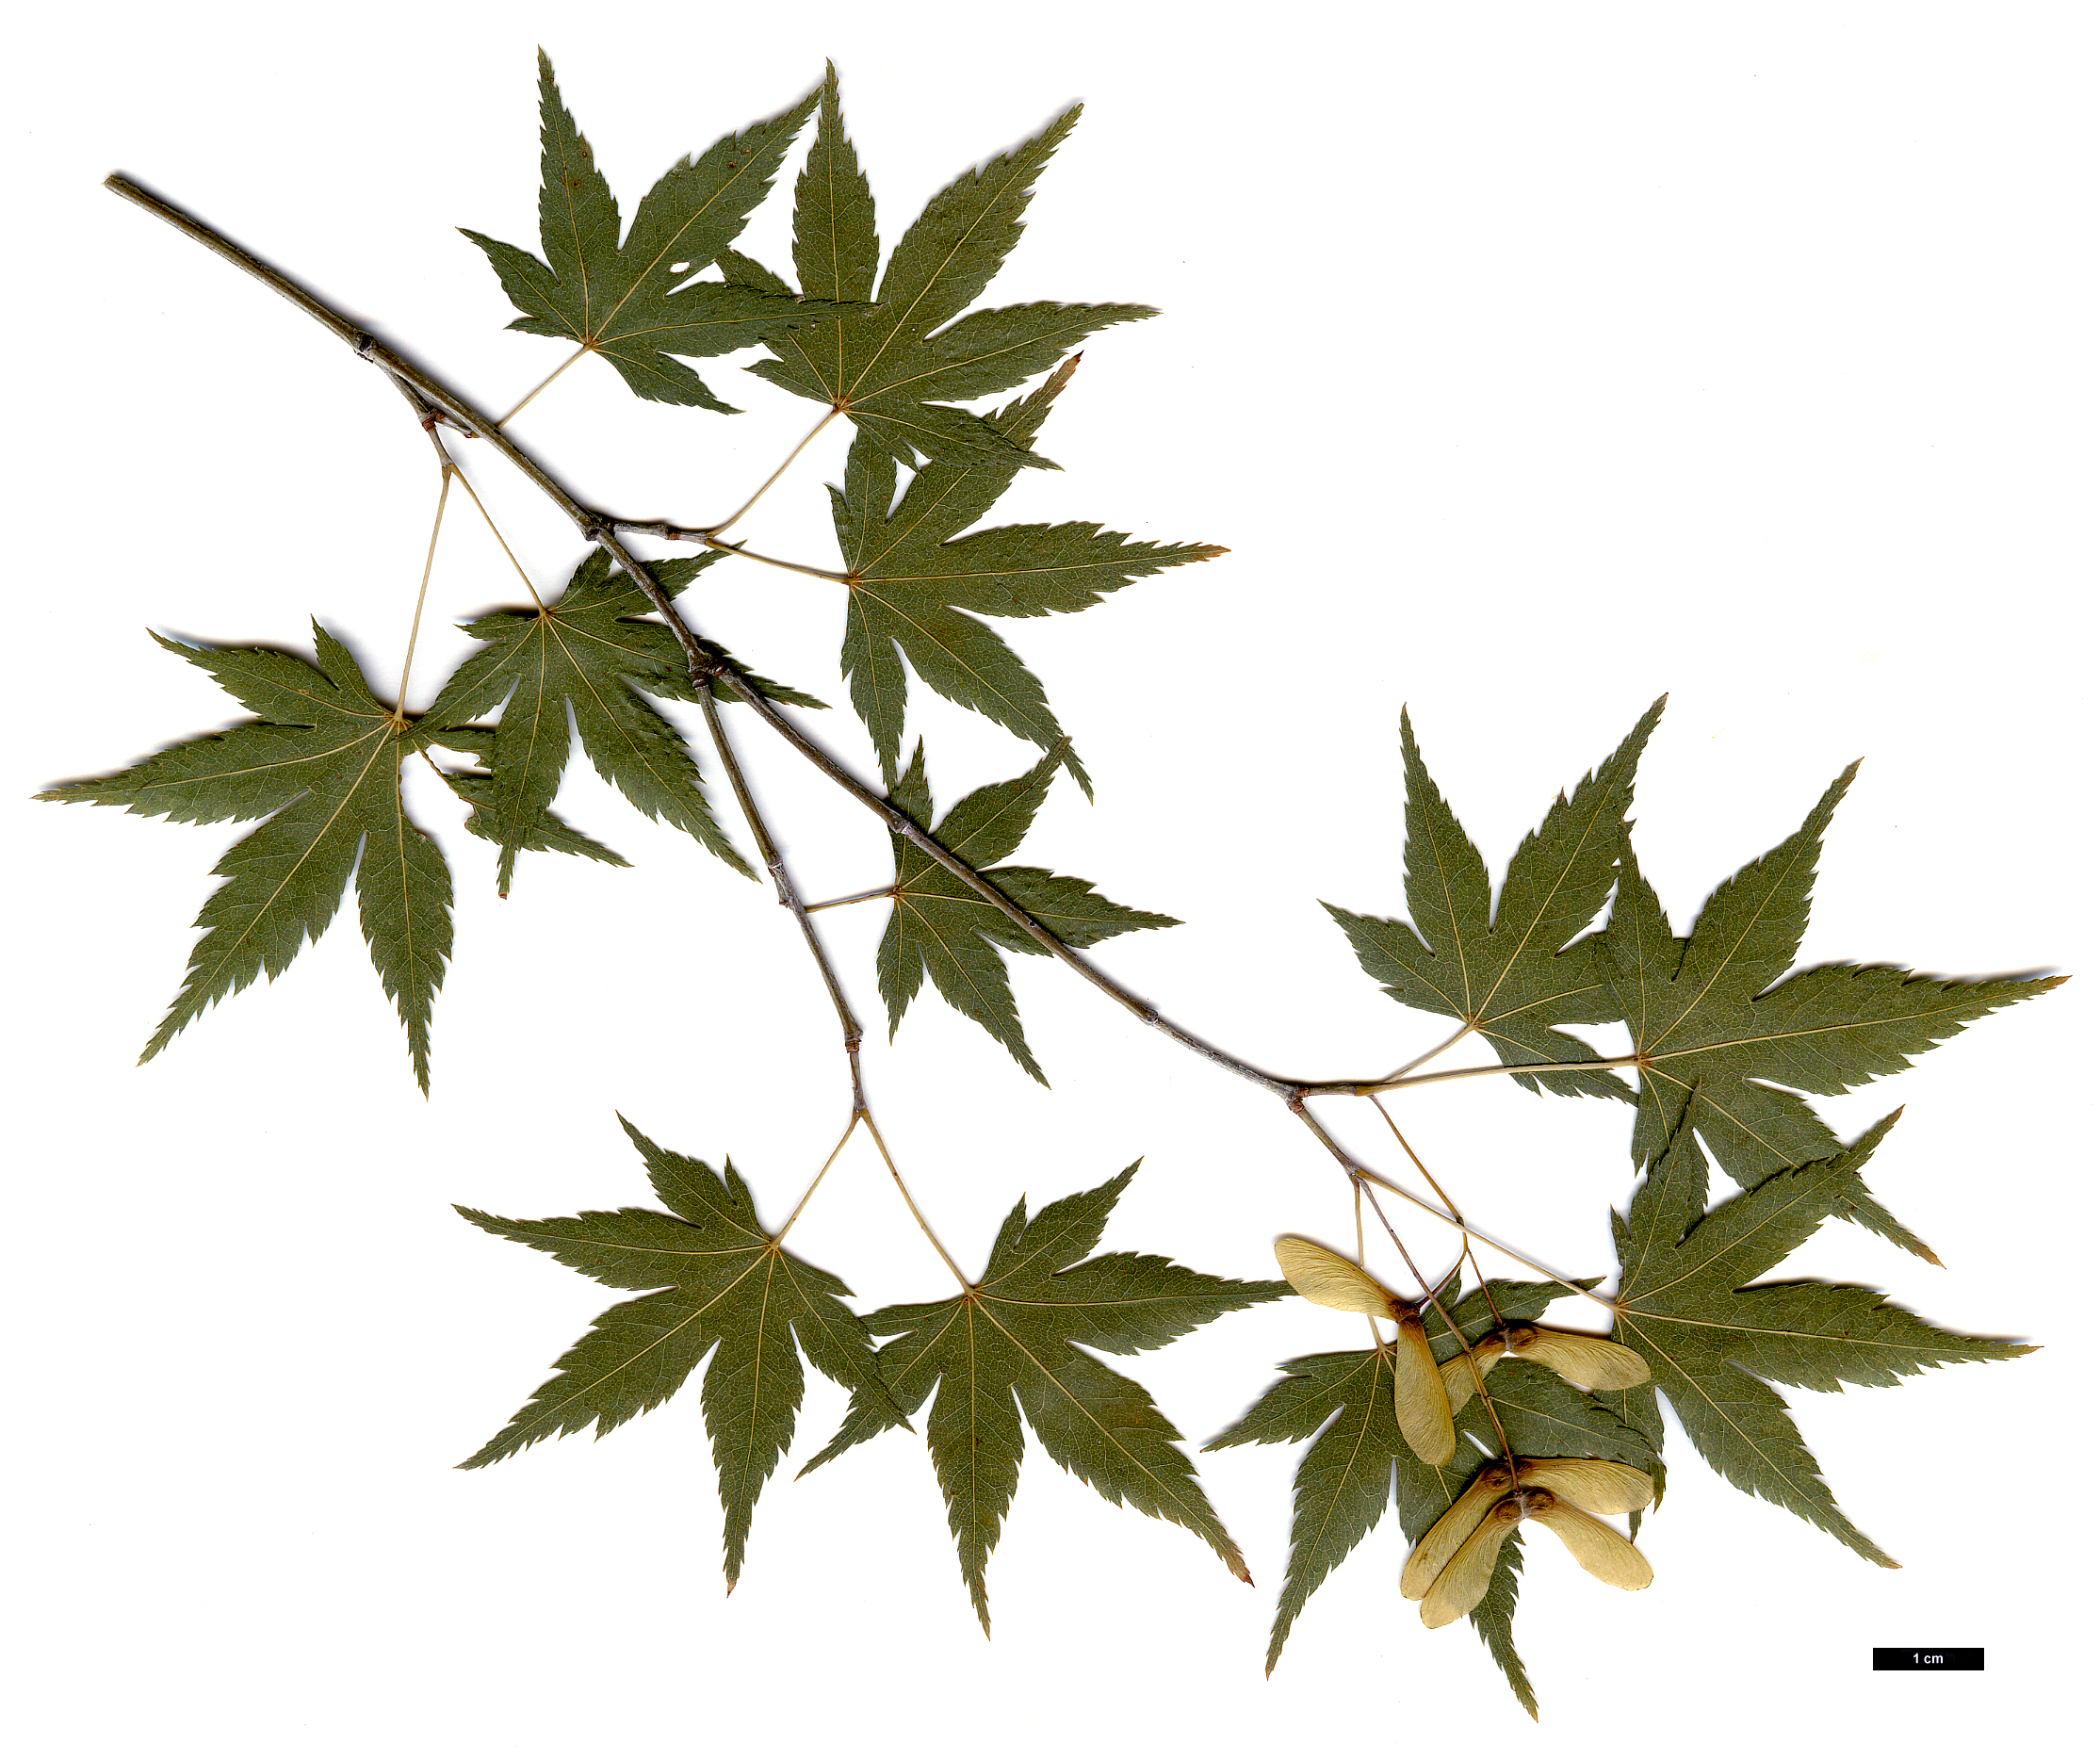 High resolution image: Family: Sapindaceae - Genus: Acer - Taxon: palmatum - SpeciesSub: subsp. palmatum